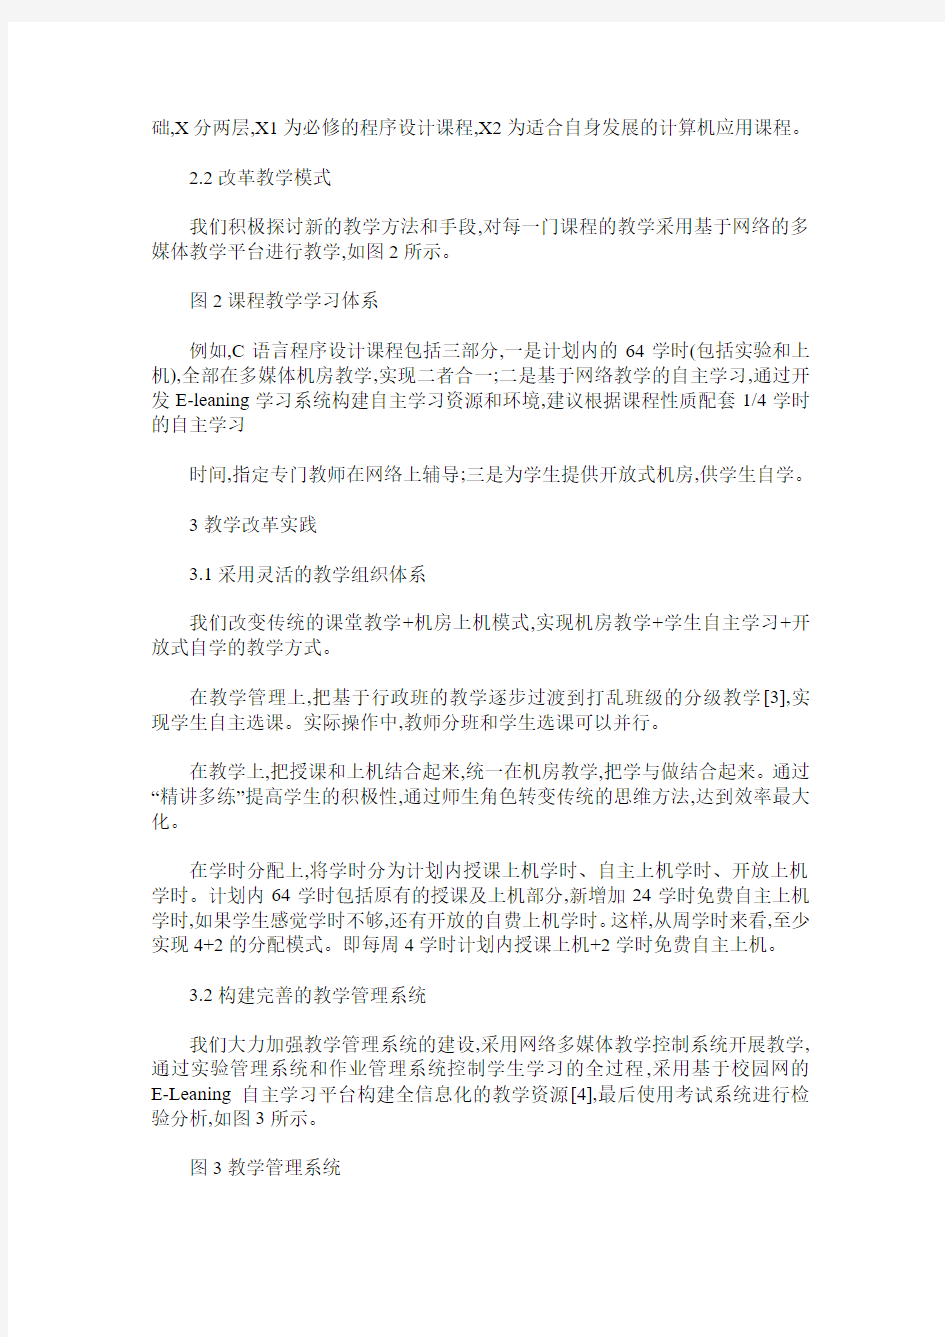 江汉大学计算机基础课程改革